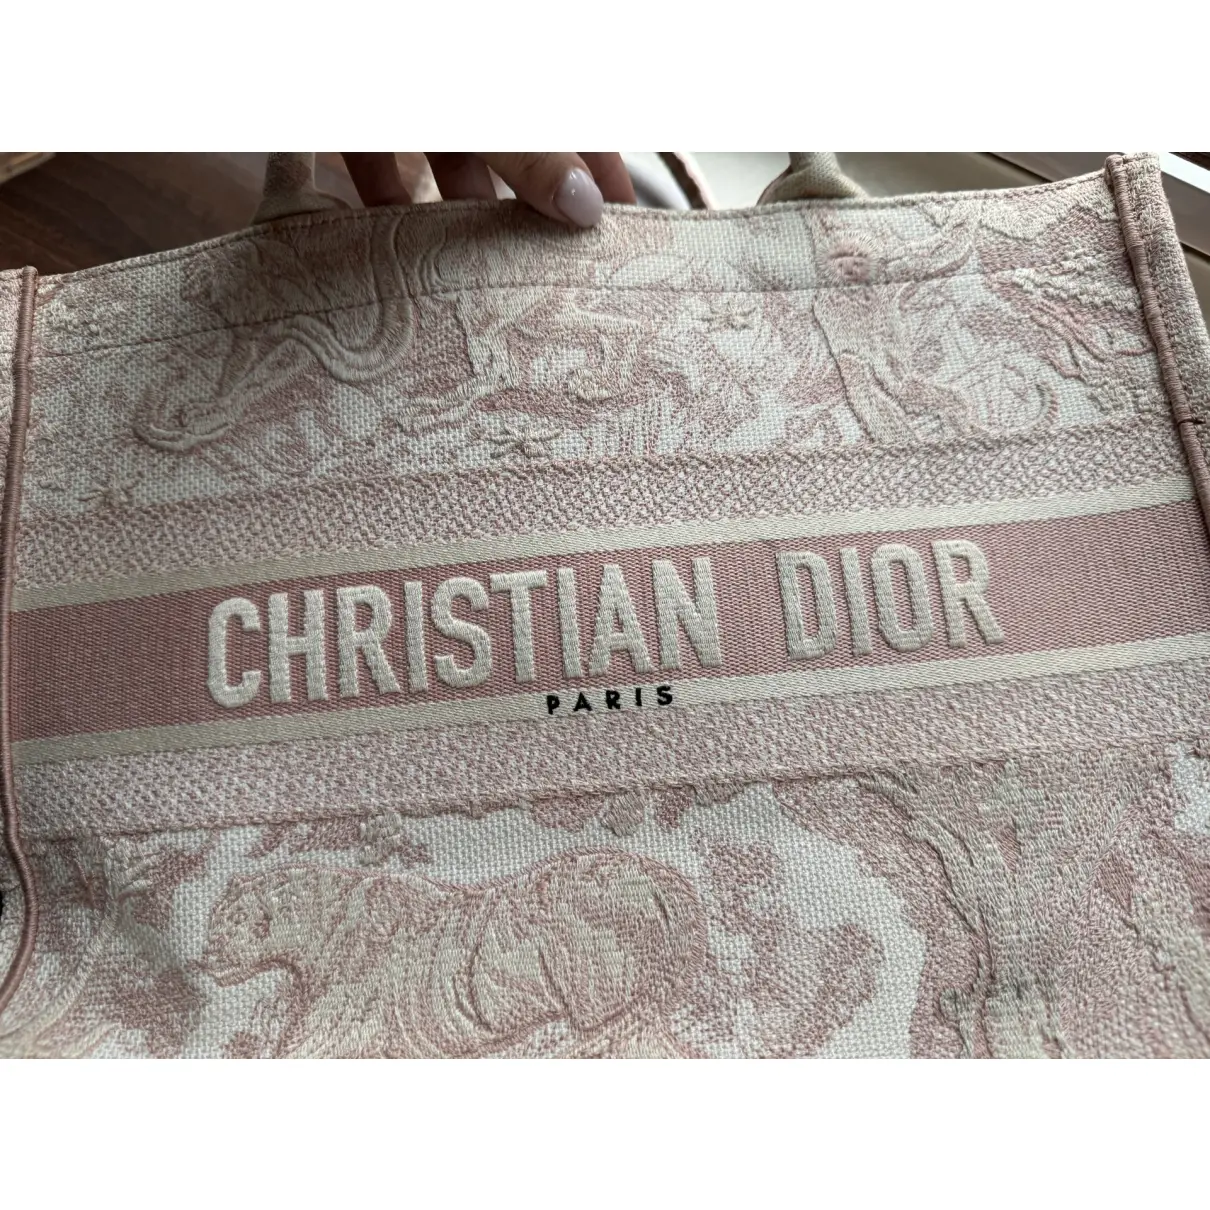 Book Tote cloth tote Dior